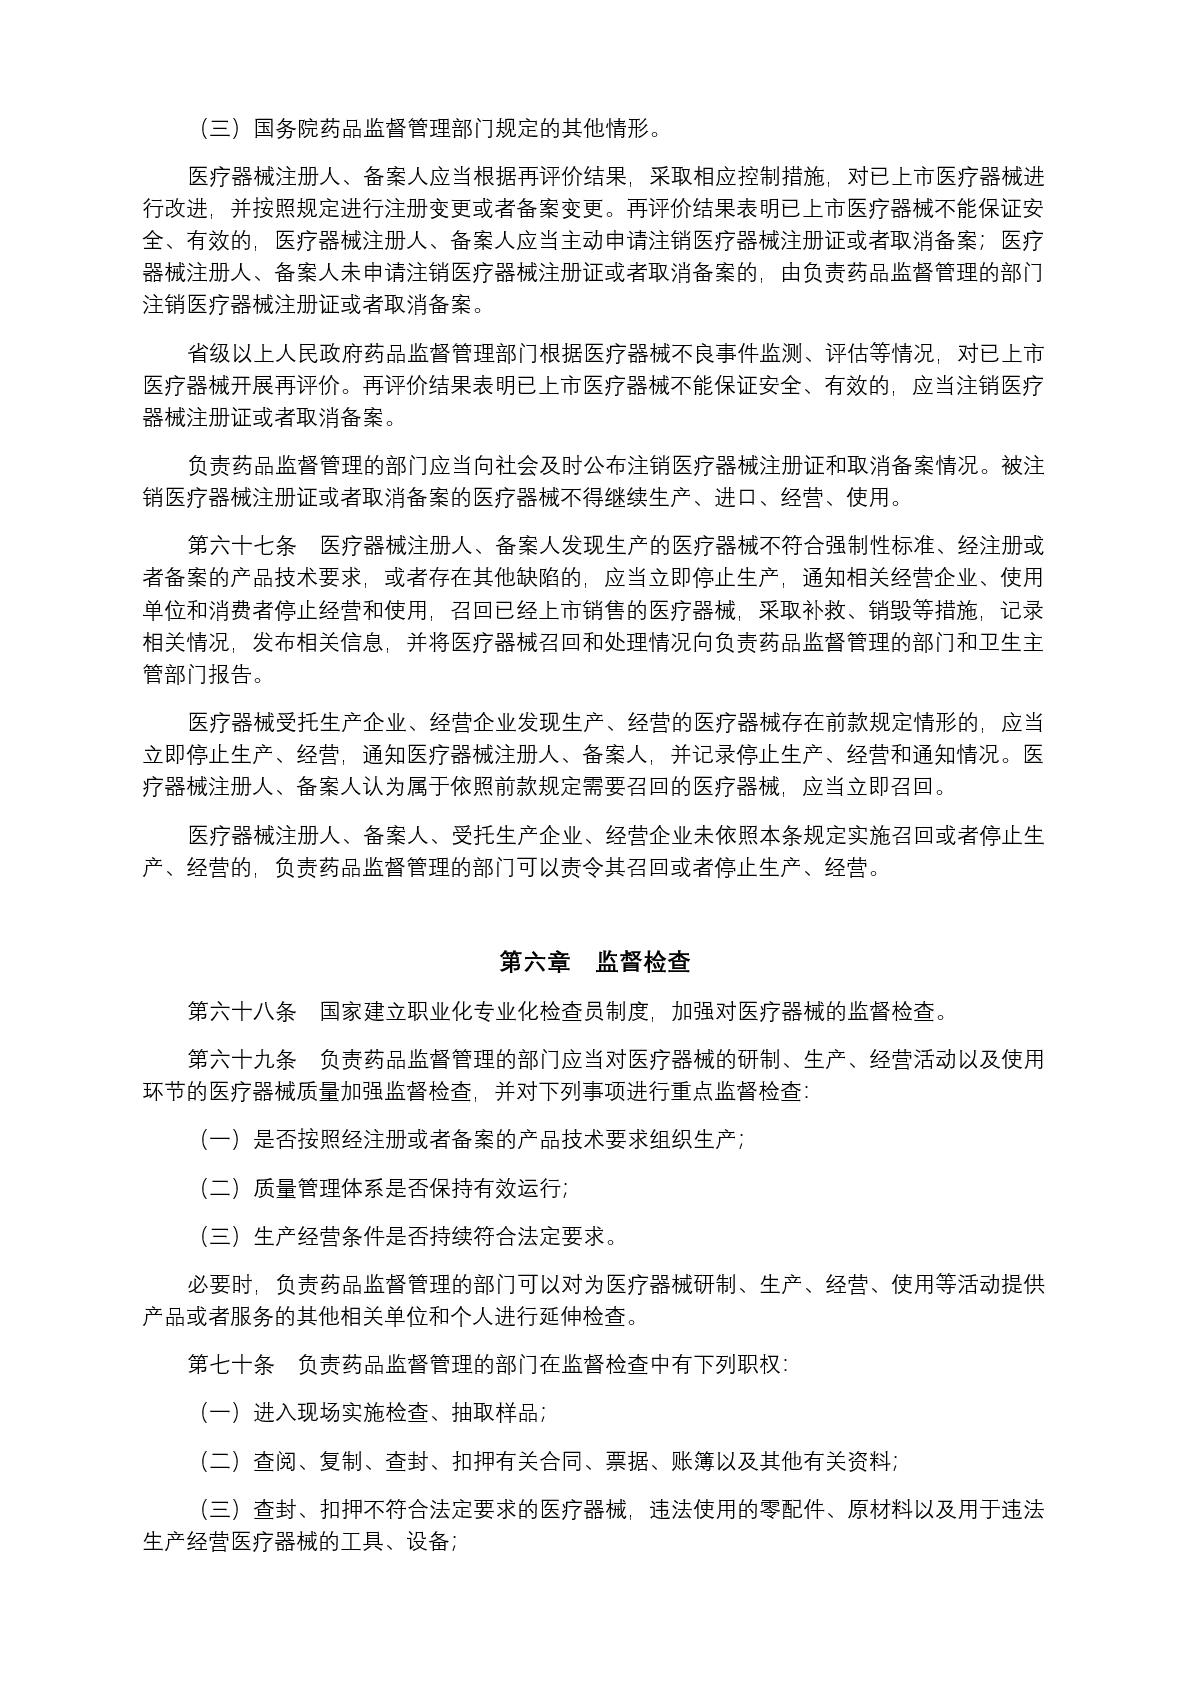 中华人民共和国国务院令第739号(1) (1)-012.jpg